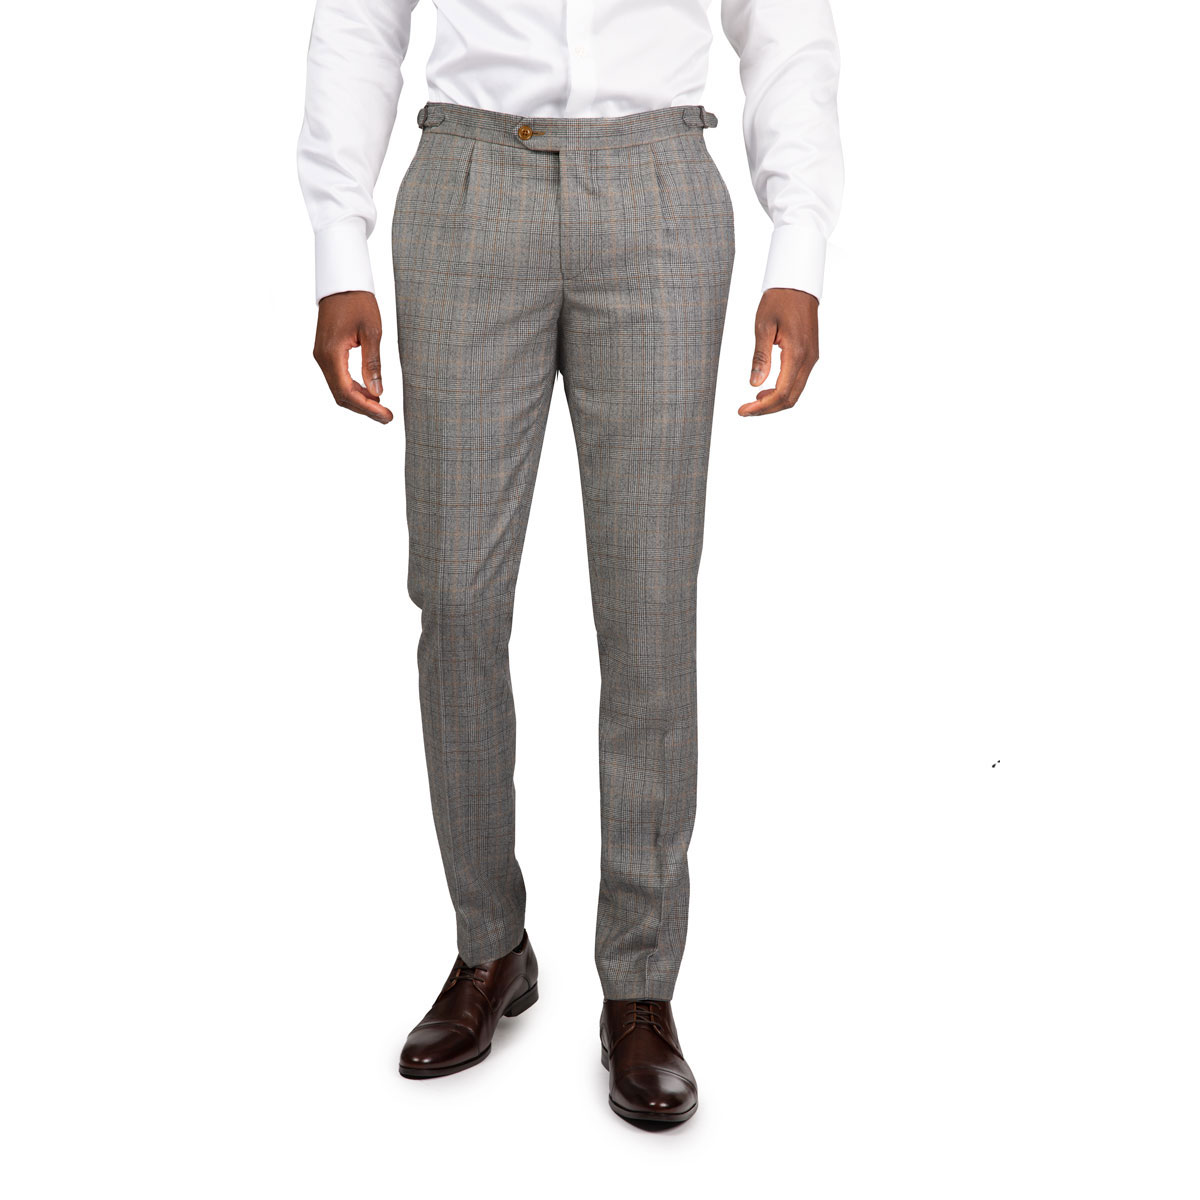 Graue Anzughose mit Karo-Muster und einer Bundfalte